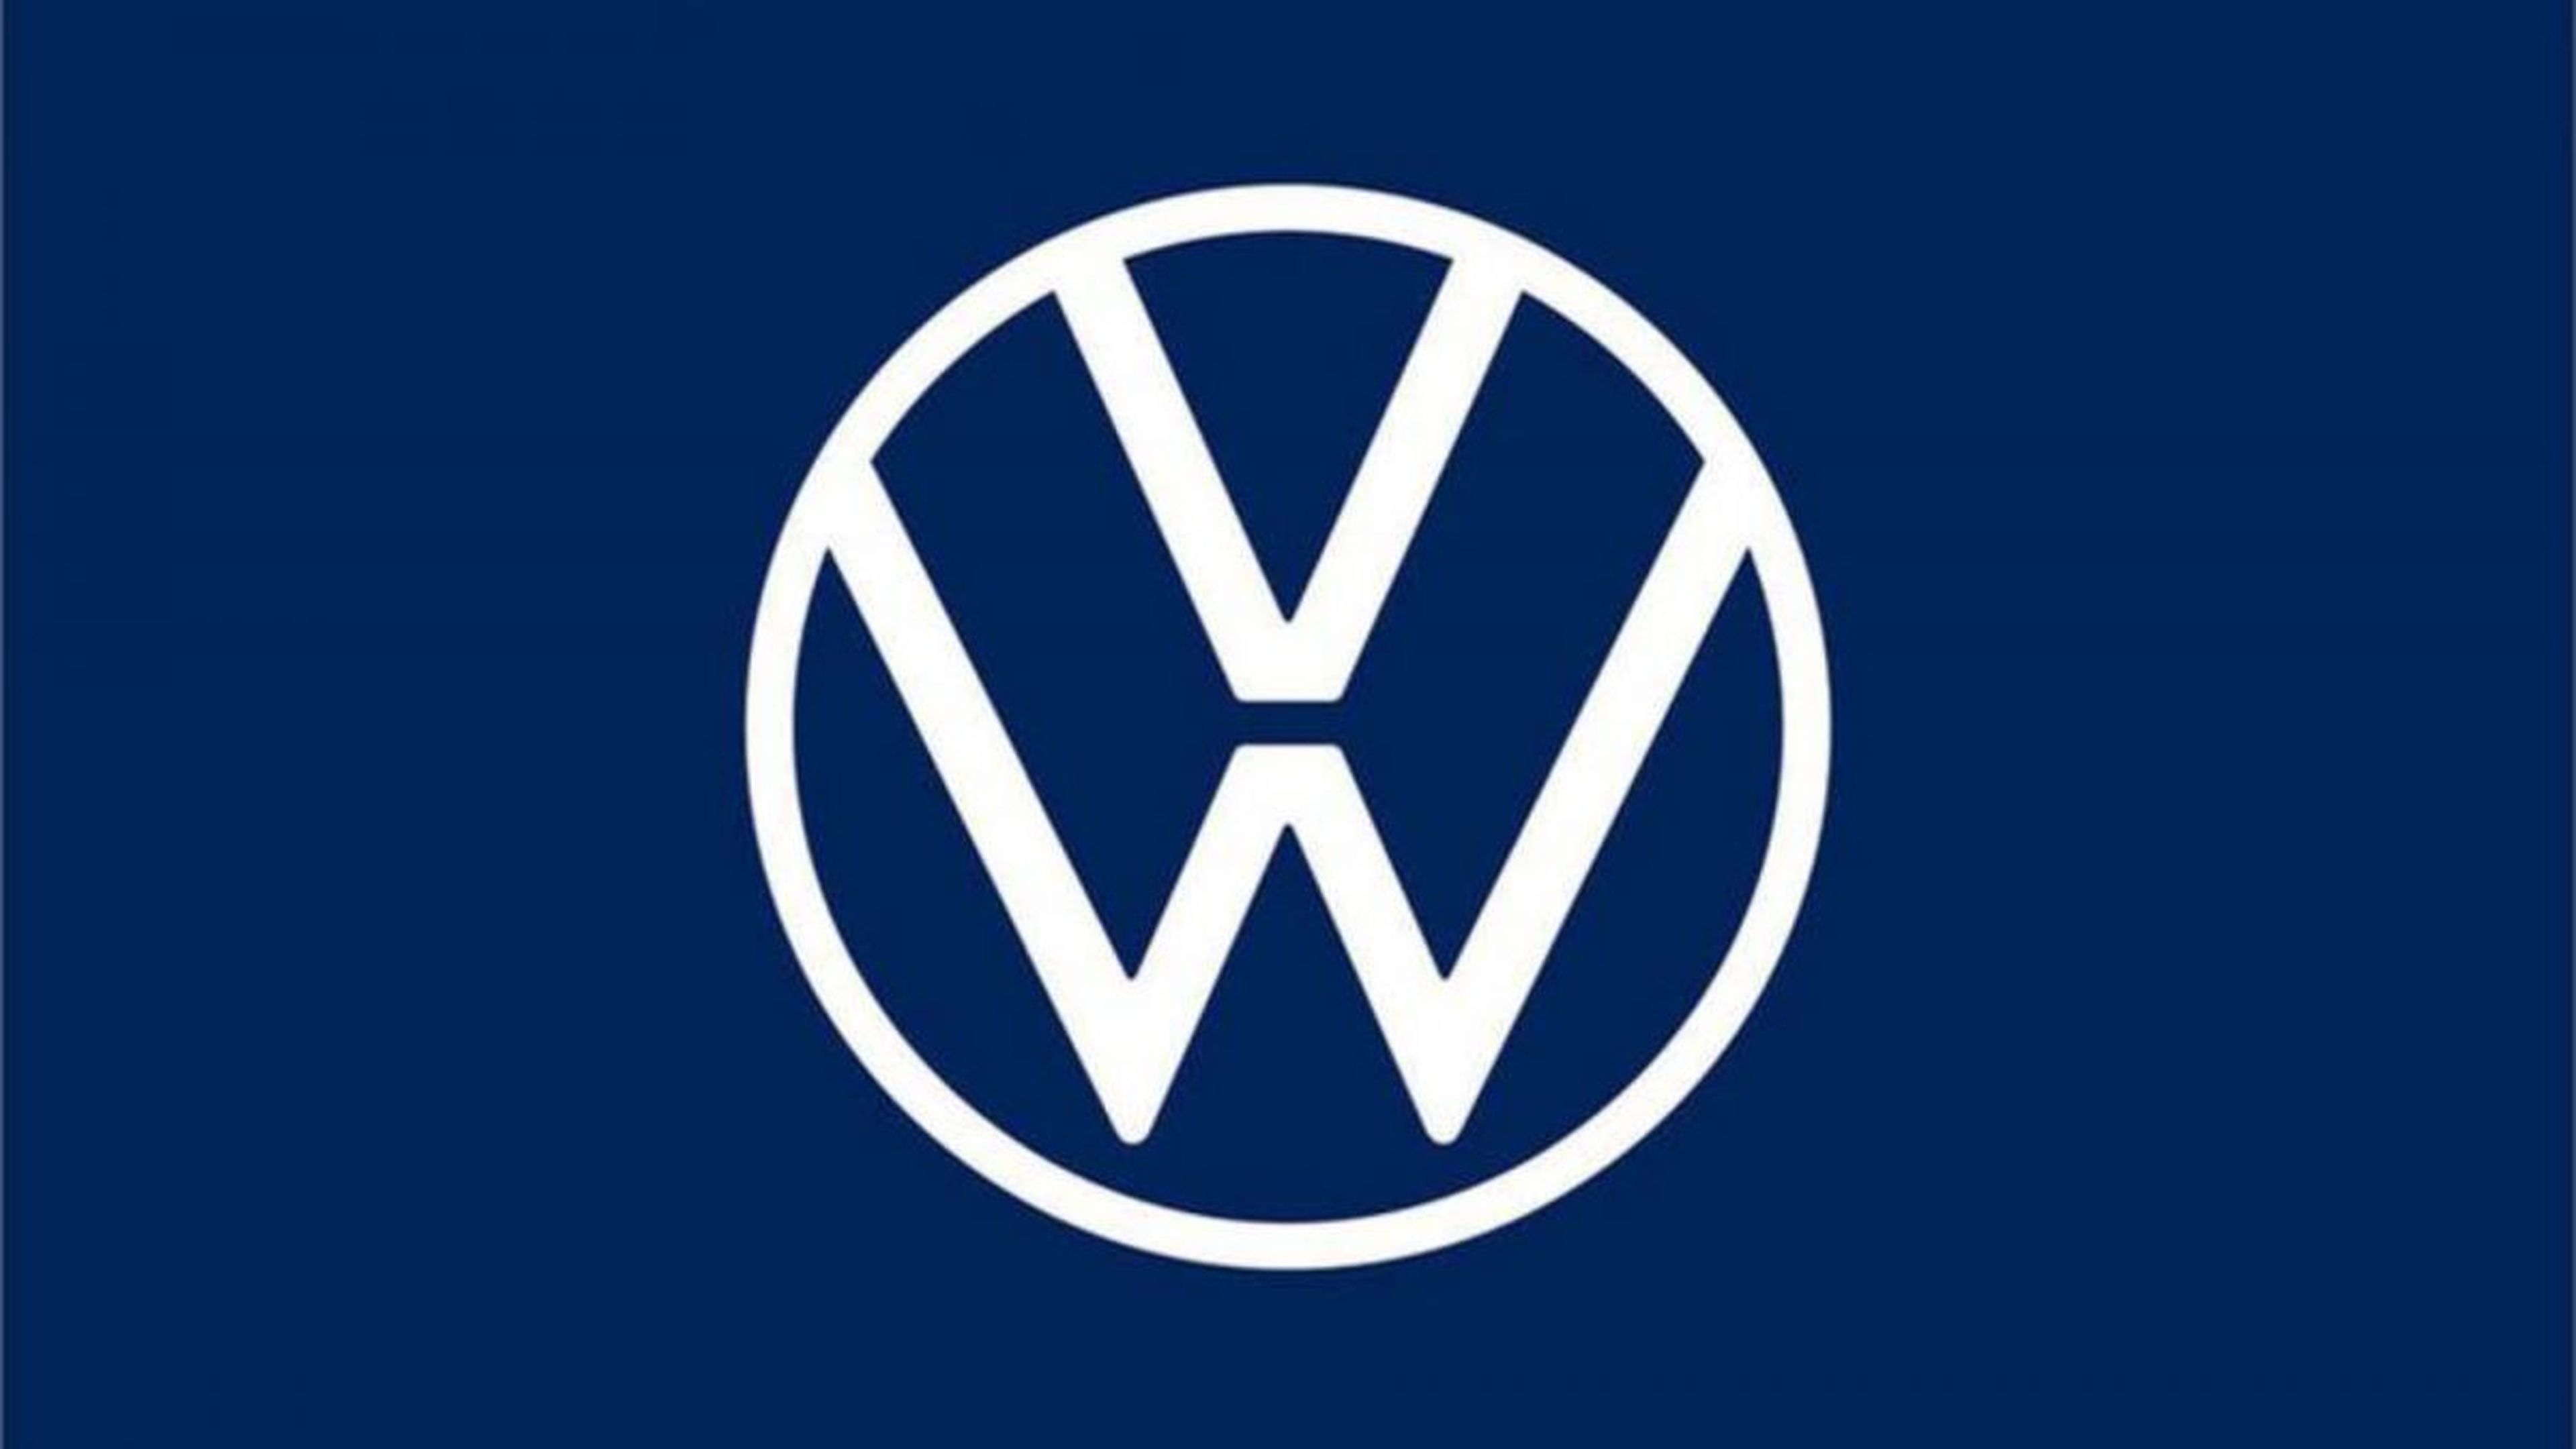 Logotipo Volkswagen